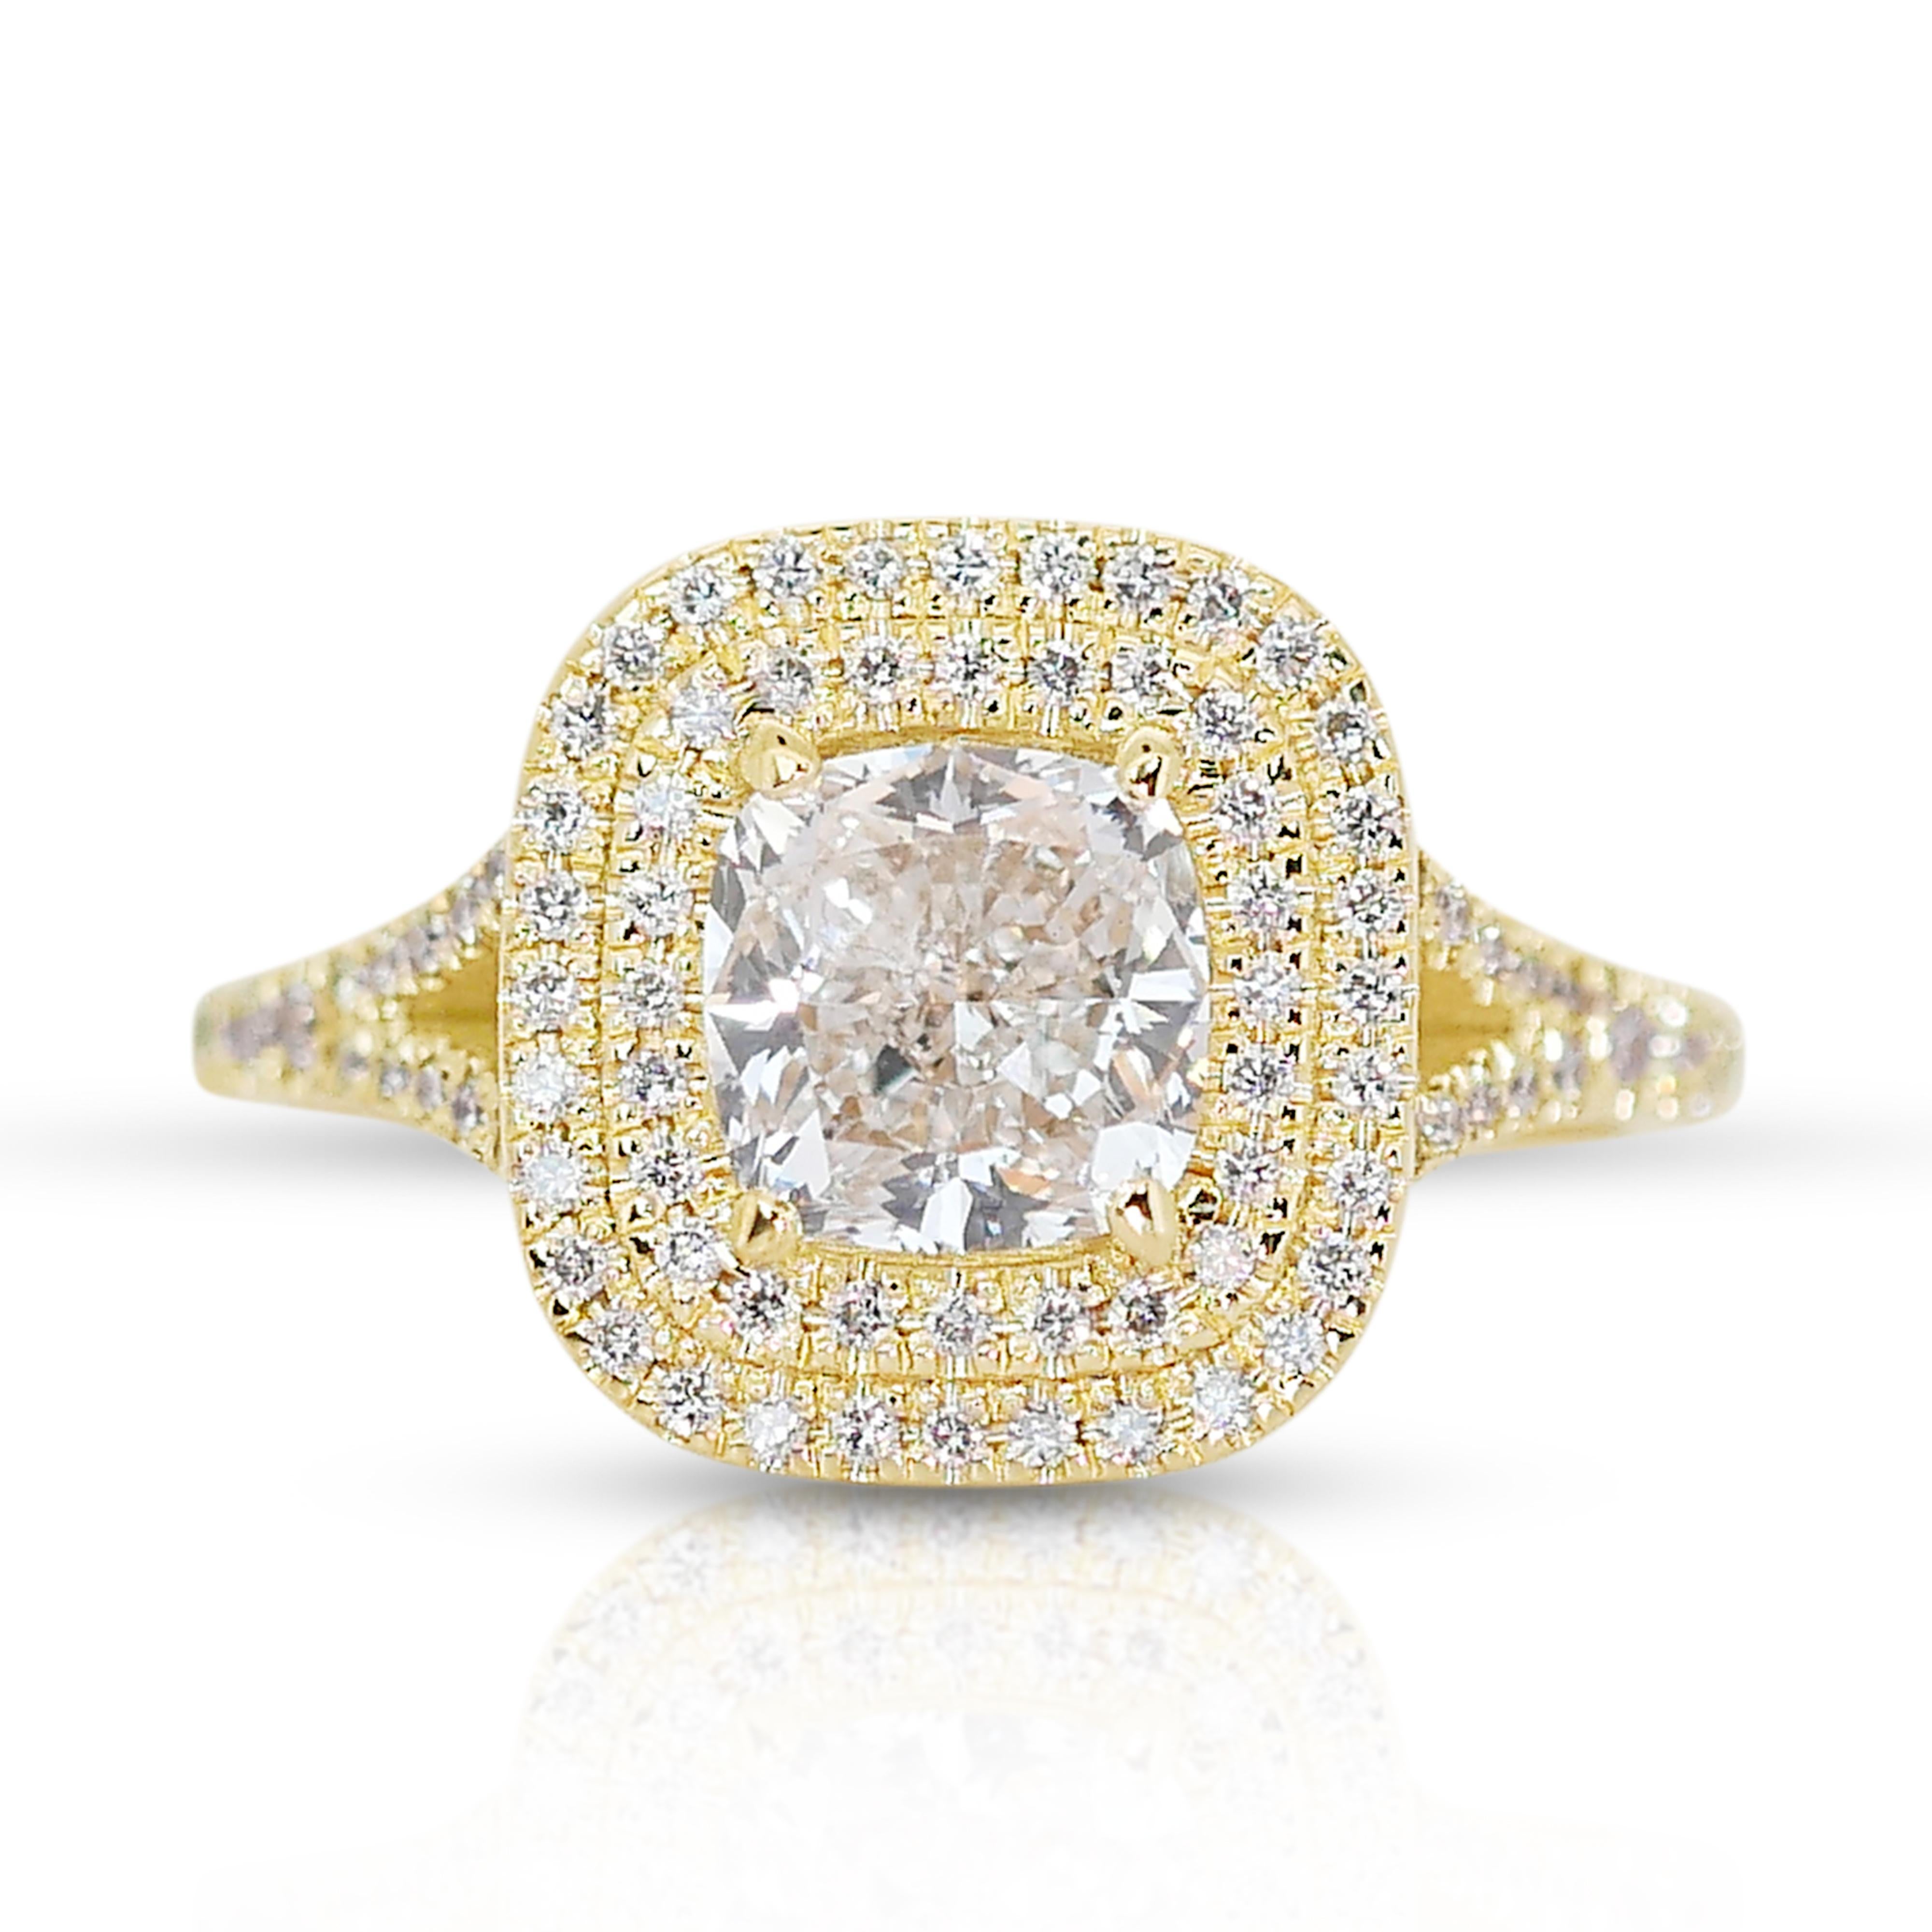 Bague double halo en or jaune 18k avec diamant coussin 1,82 ct - IGI Certified

Élevez votre style avec cette bague à double halo de diamants en or jaune 18 carats. Au cœur de cette pièce à couper le souffle se trouve un diamant coussin carré de